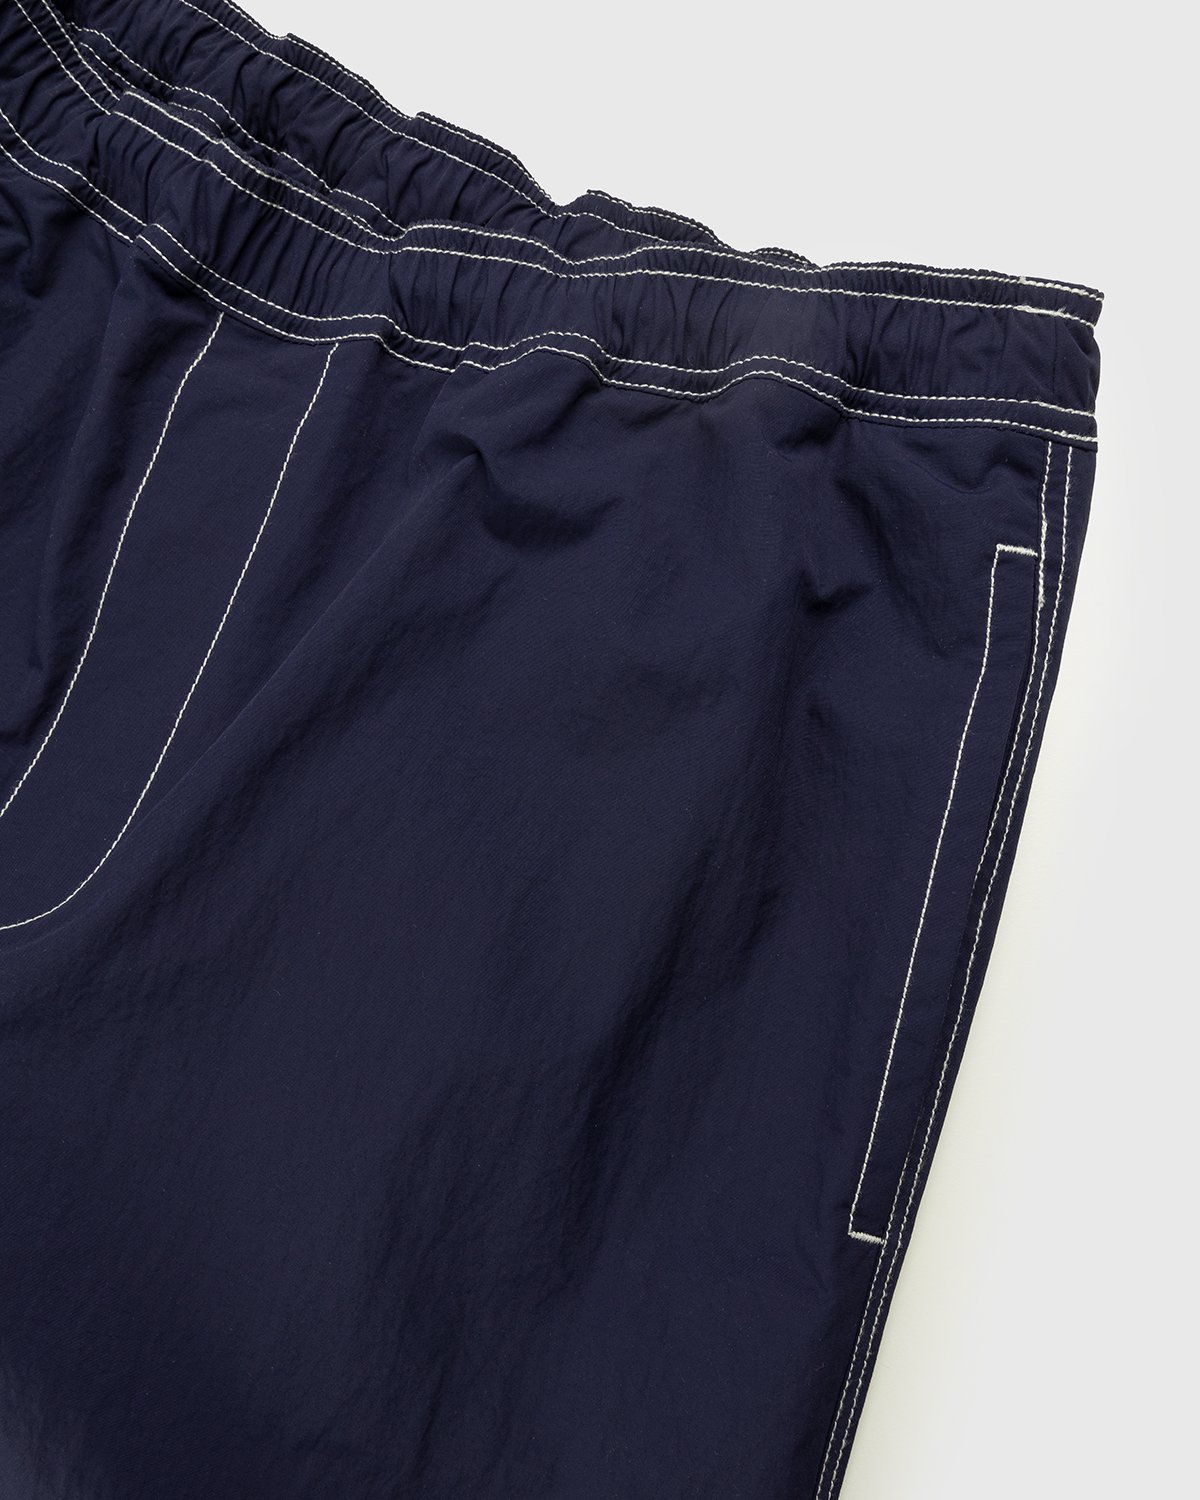 Highsnobiety - Contrast Brushed Nylon Elastic Pants Navy - Clothing - Blue - Image 4